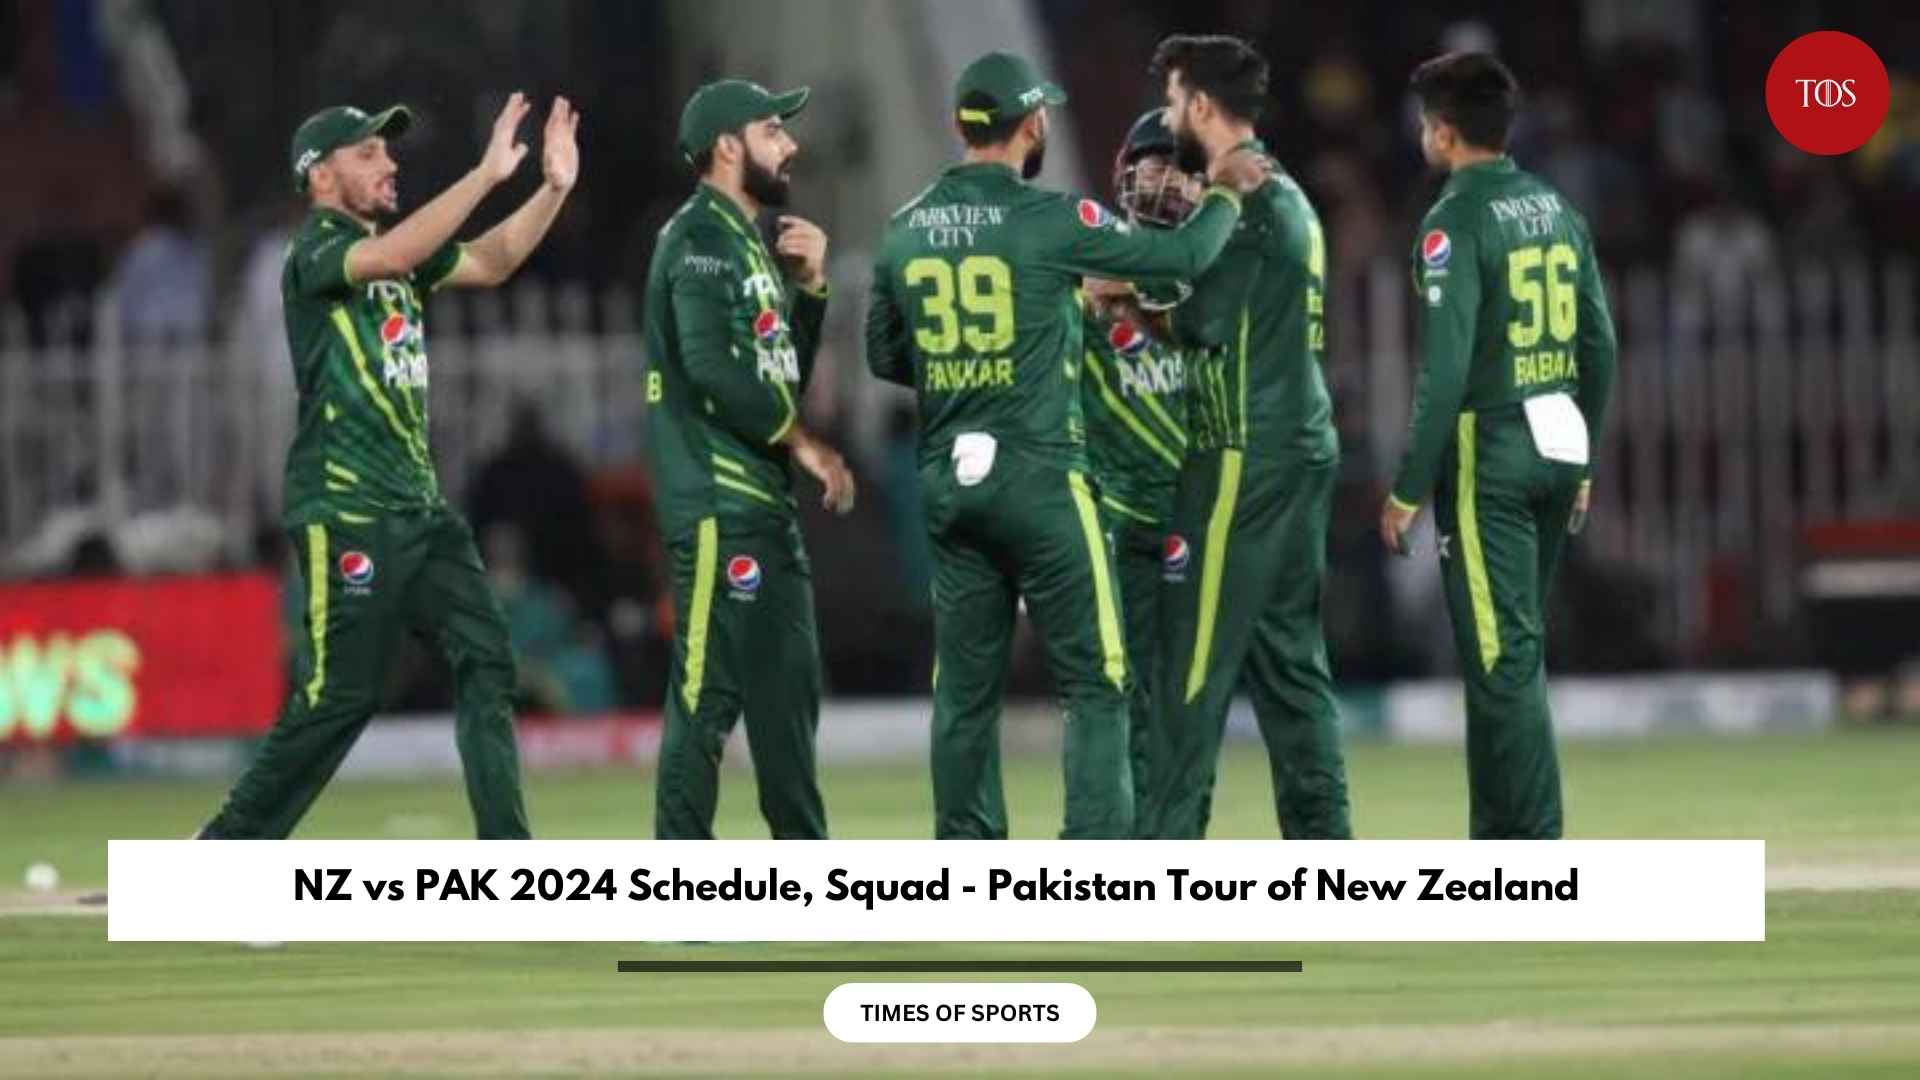 NZ vs PAK 2024 Schedule, Squad - Pakistan Tour of New Zealand